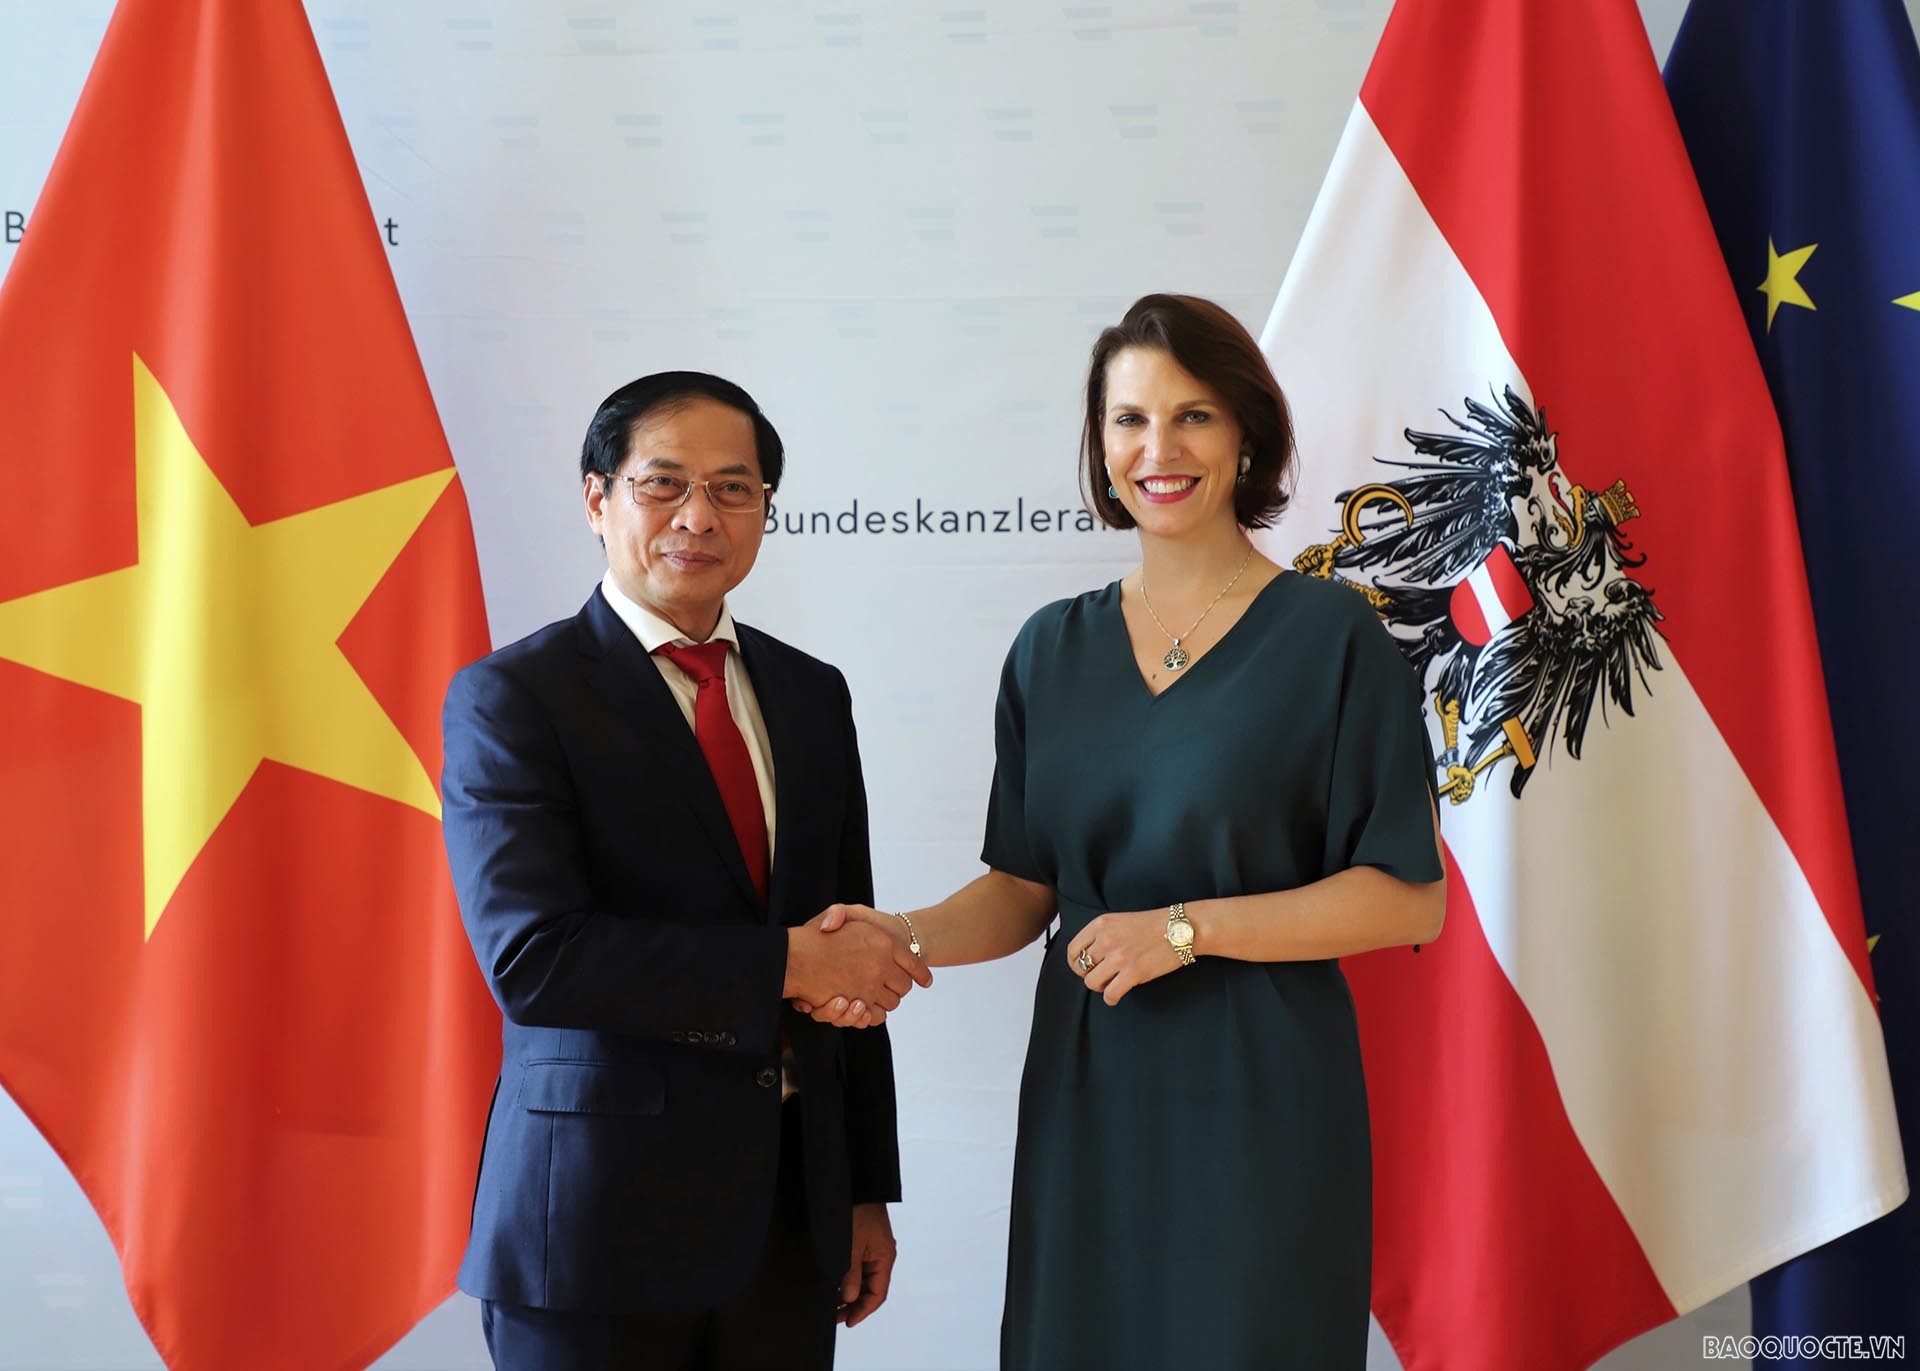 Bộ trưởng Ngoại giao Bùi Thanh Sơn gặp Bộ trưởng EU và Hiến pháp Áo Karoline Edstadler.